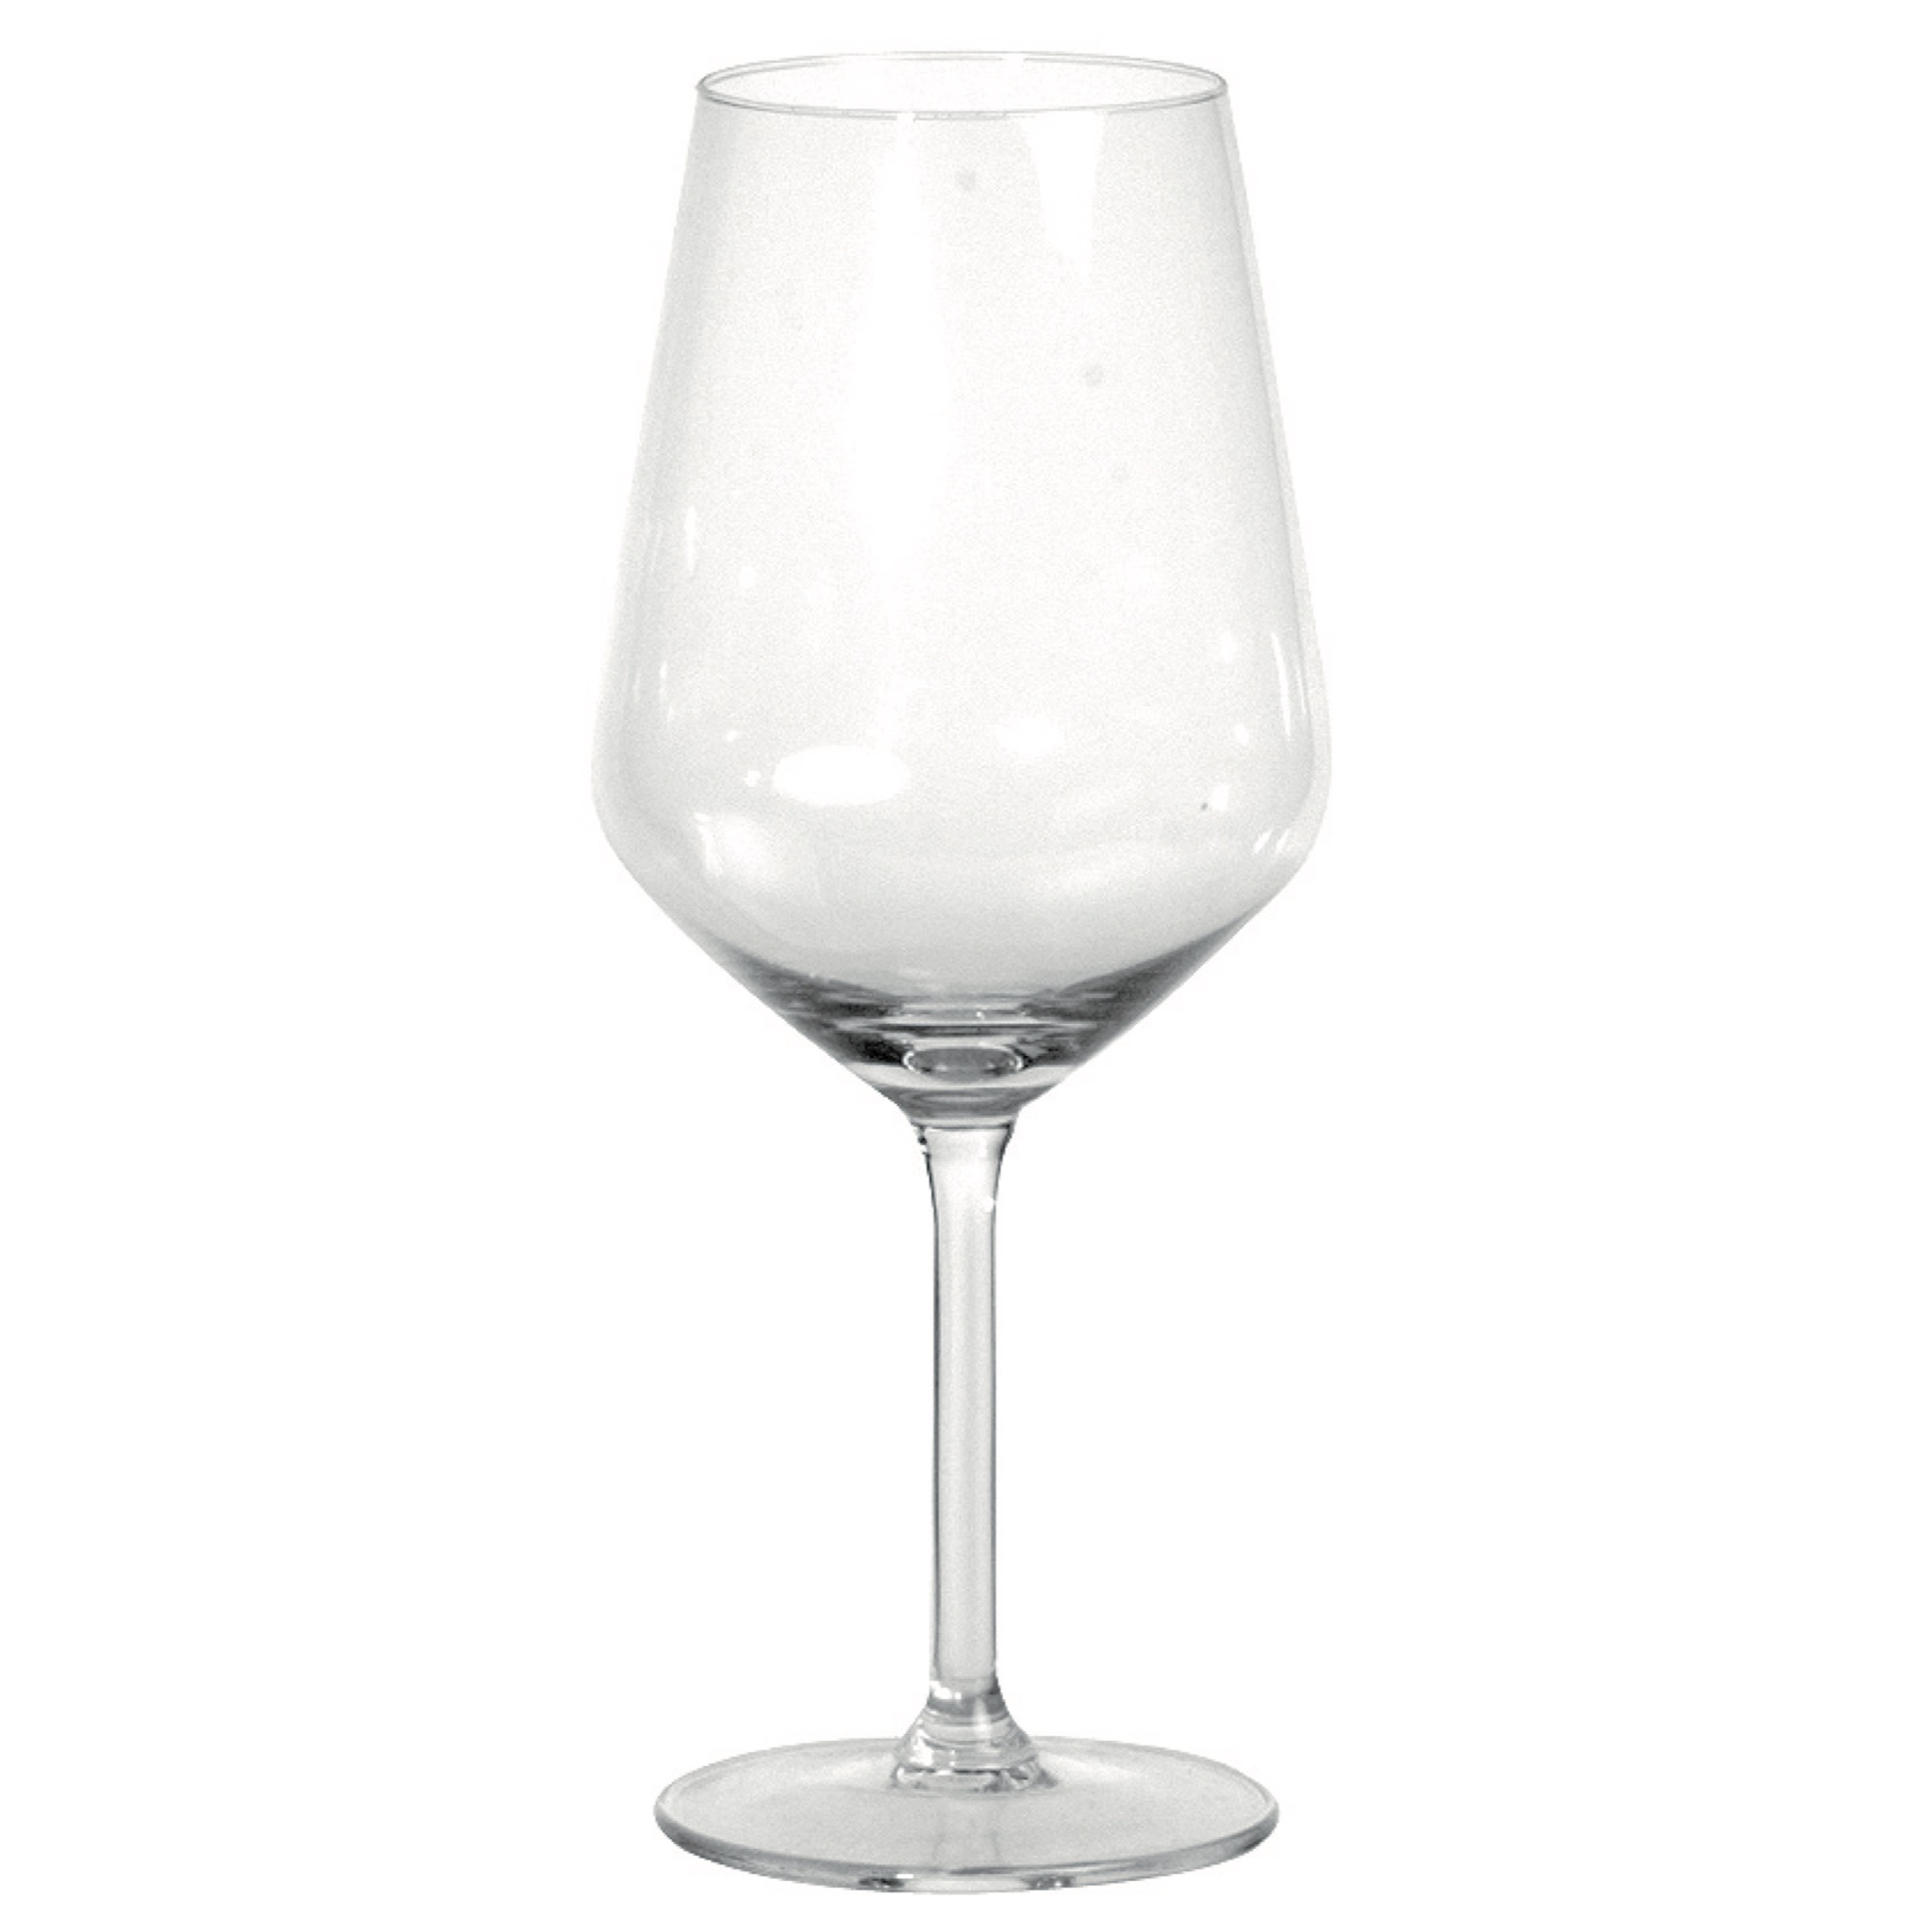 Royal Carré pohár/víno 530ml 1/8l zn.